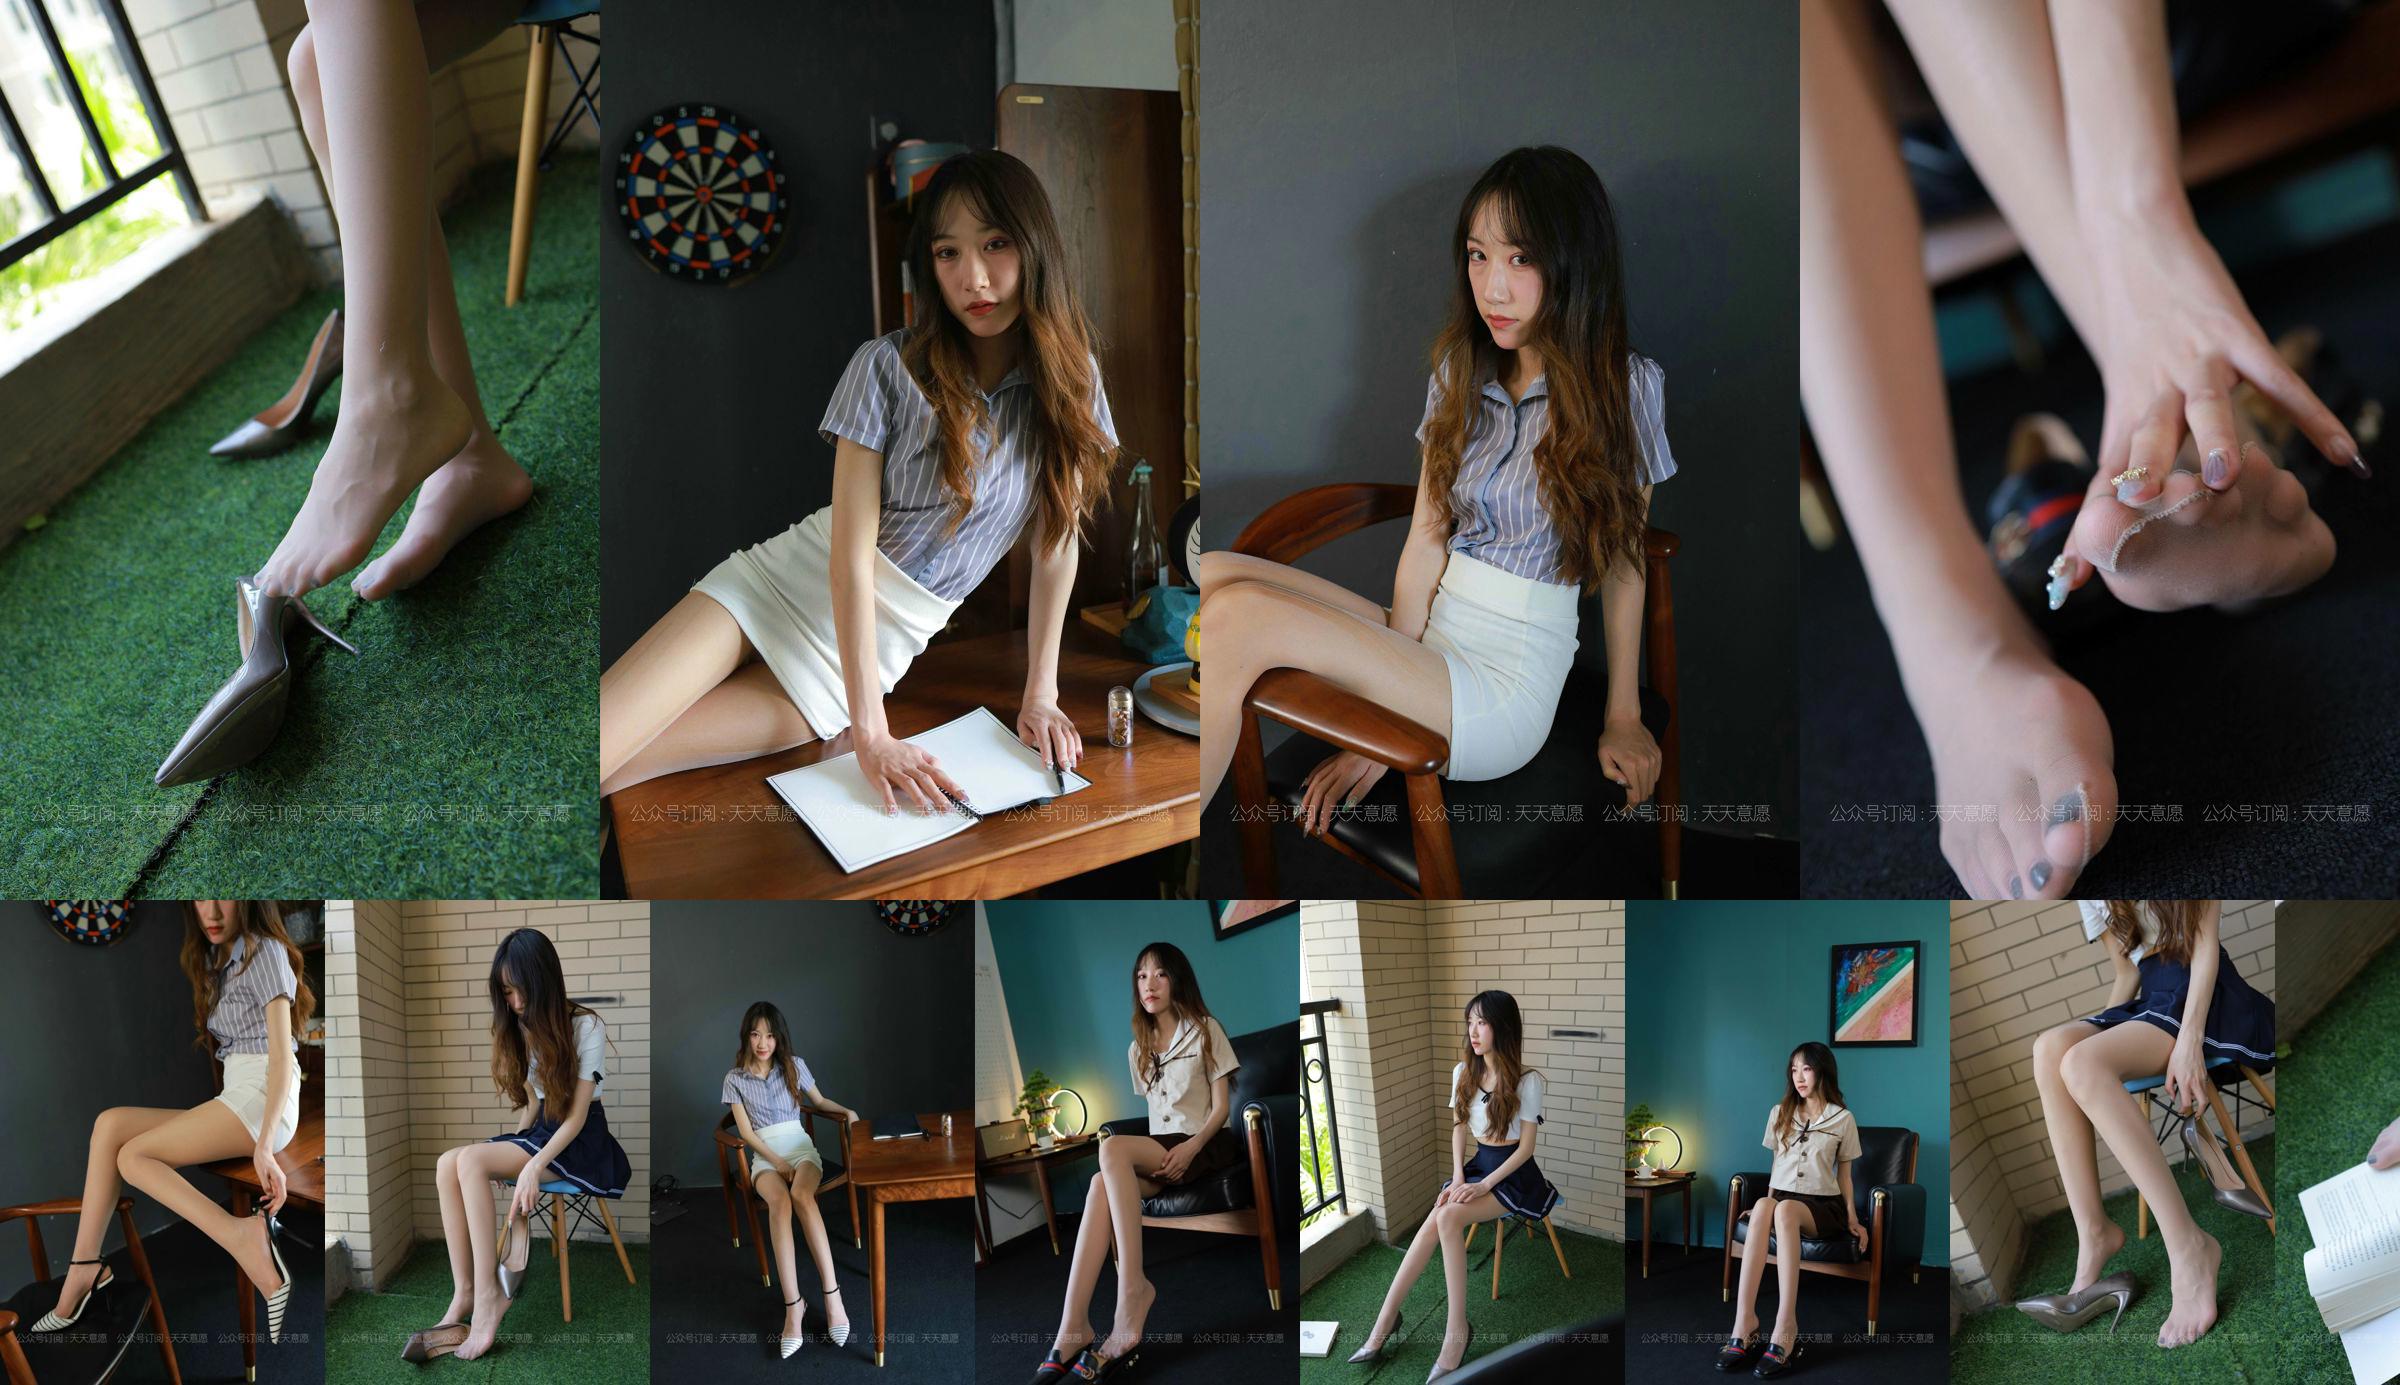 [IESS 奇思趣向] Model: Yiyi "JK Girl" No.64c8de Pagina 9